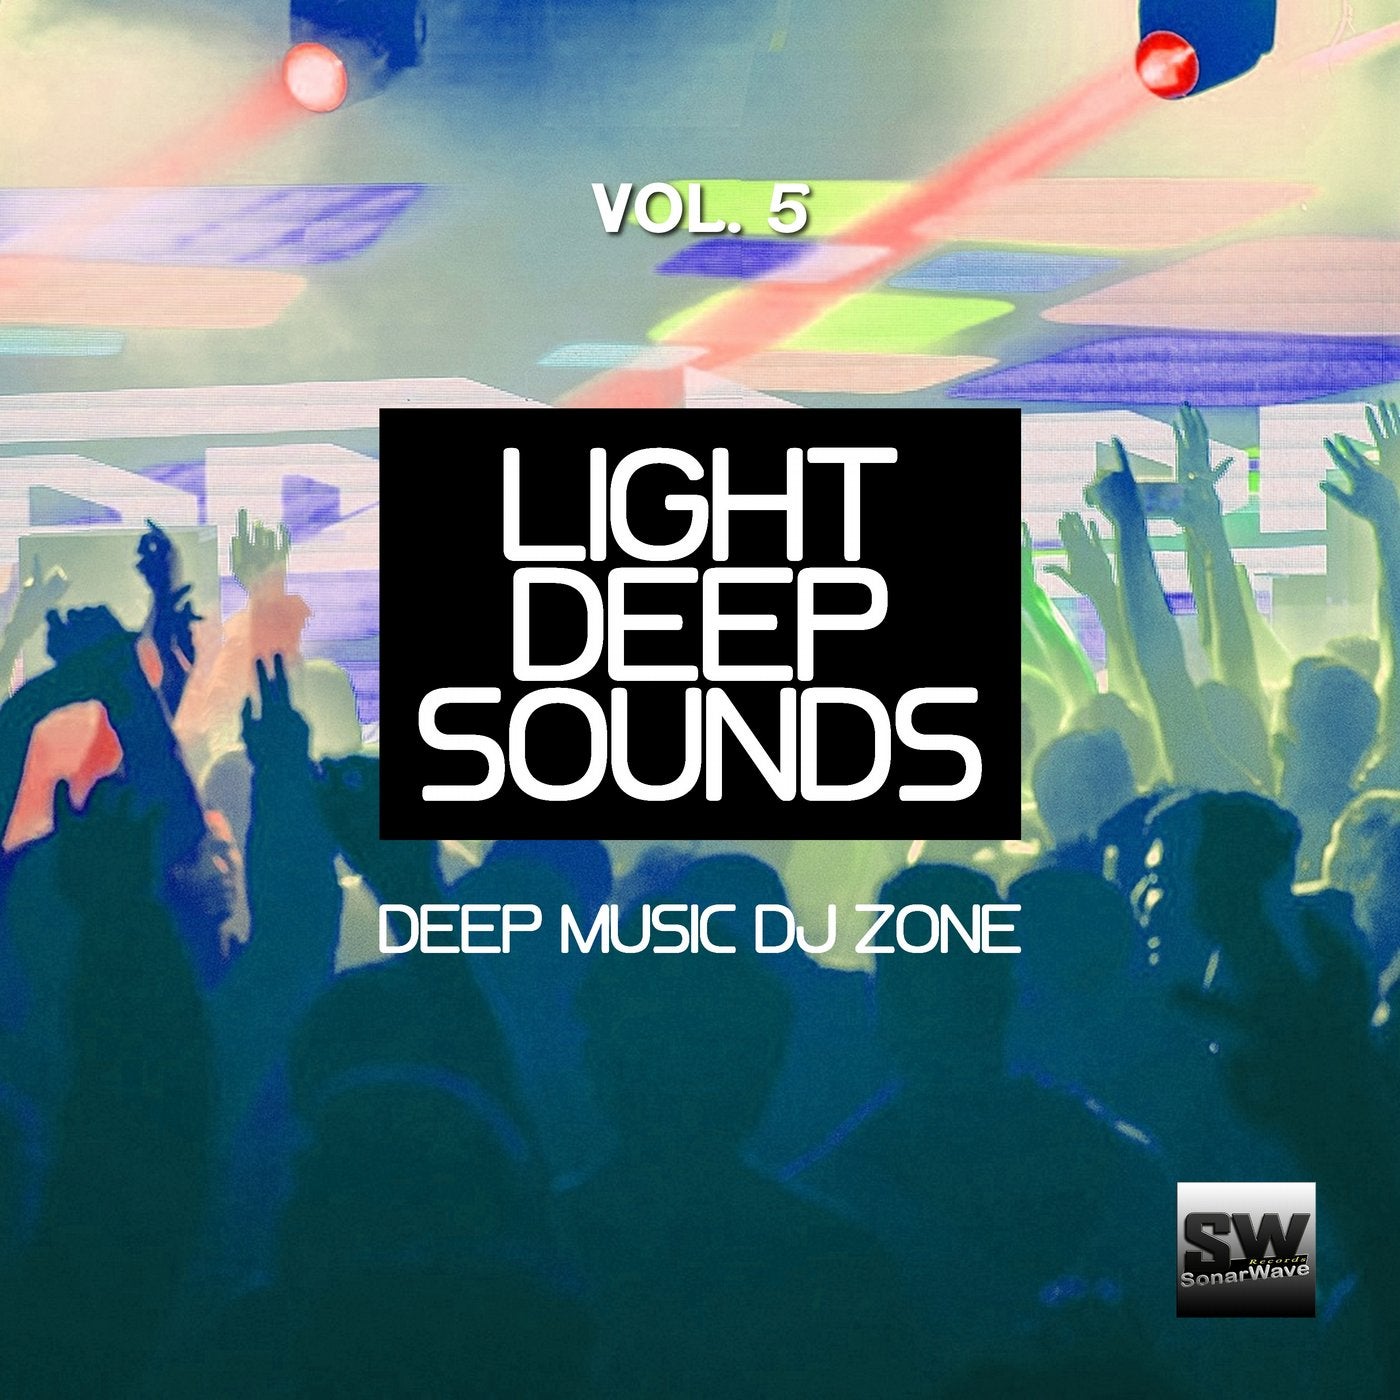 Light Deep Sounds, Vol. 5 (Deep Music DJ Zone)